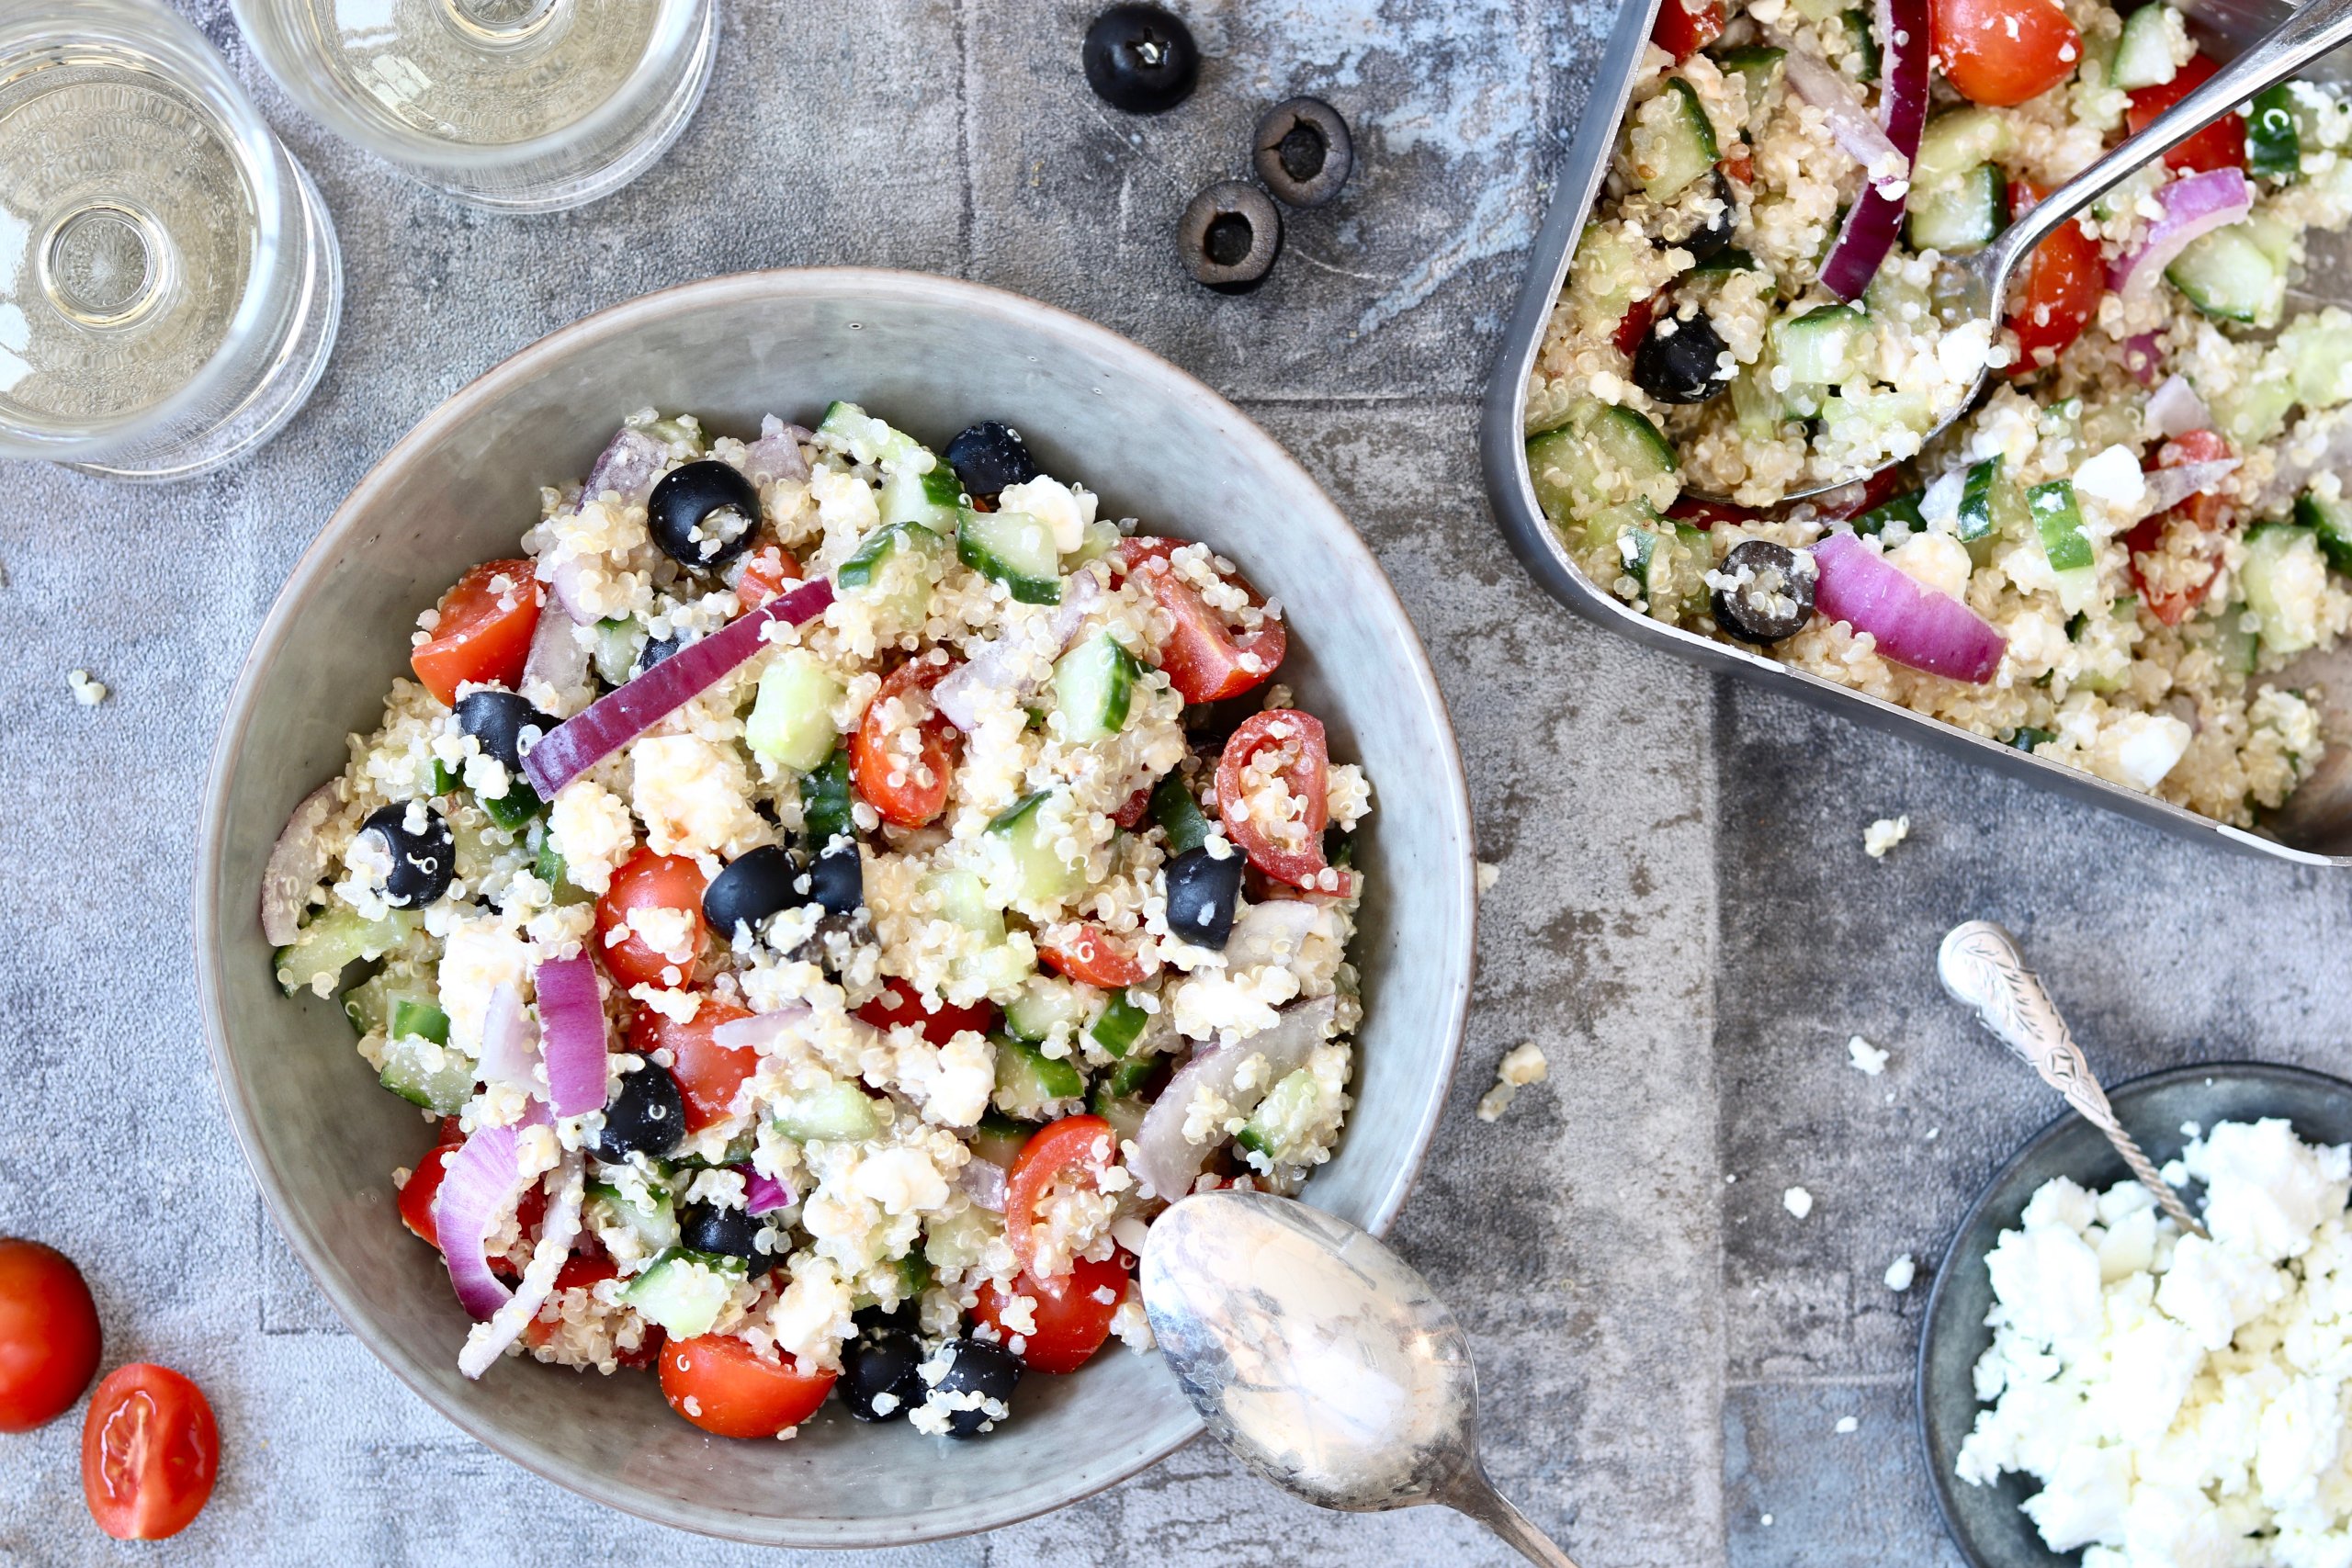 https://chickslovefood.com/app/uploads/2019/02/griekse-salade-met-quinoa-1.jpeg